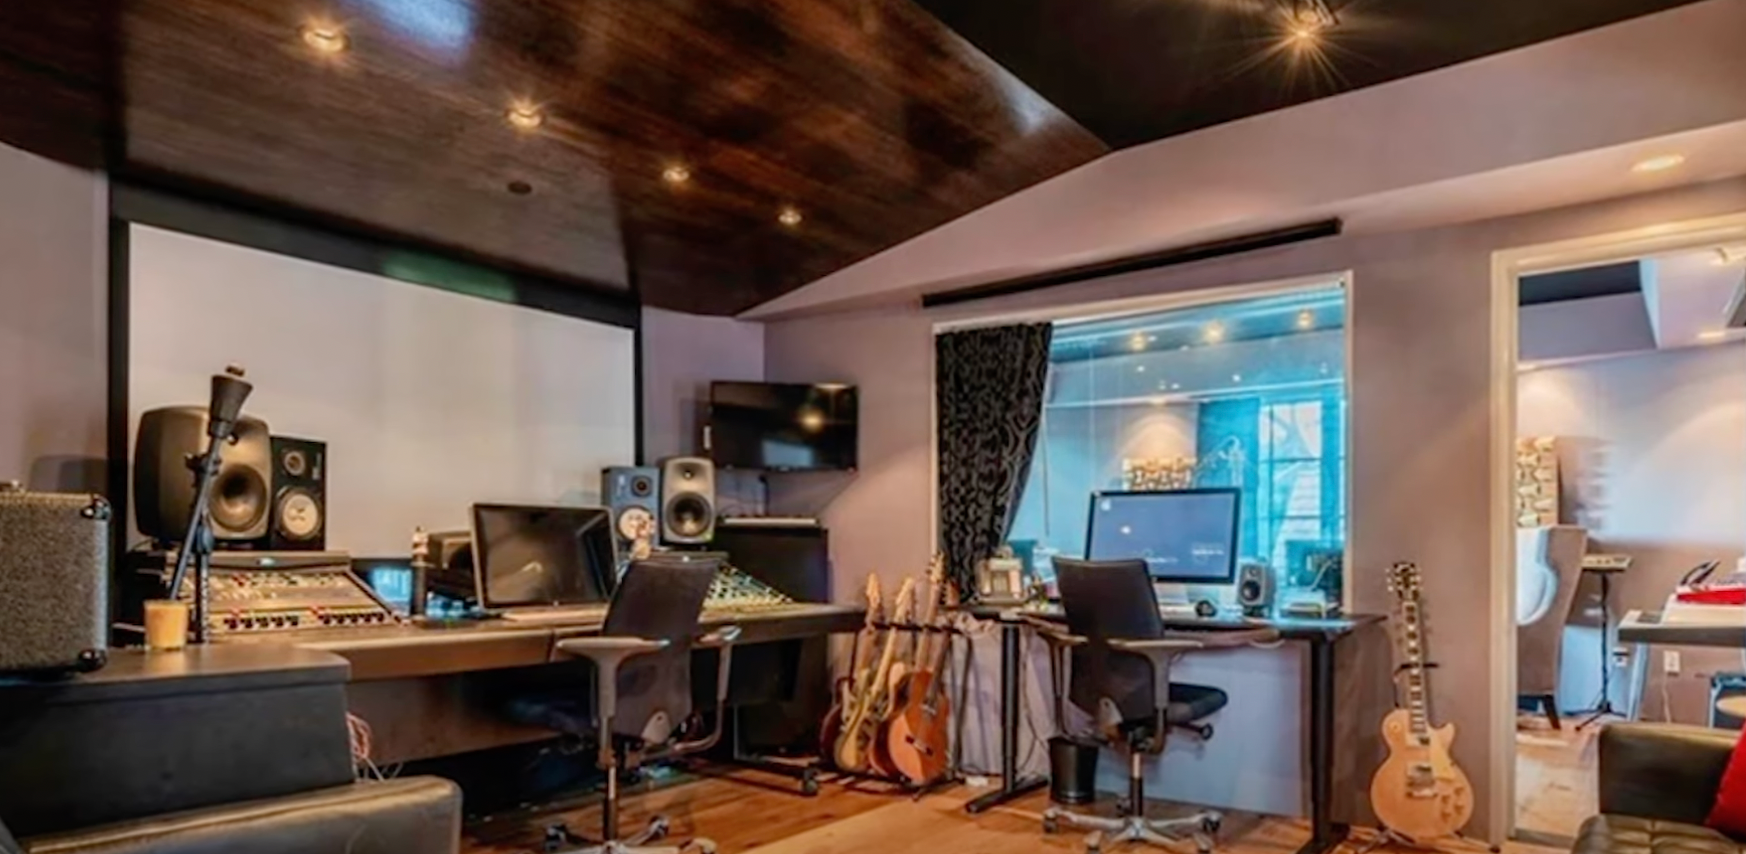 Le studio d'enregistrement de John Stamos dans sa maison de Los Angeles | Source : YouTube@FamousEntertainment